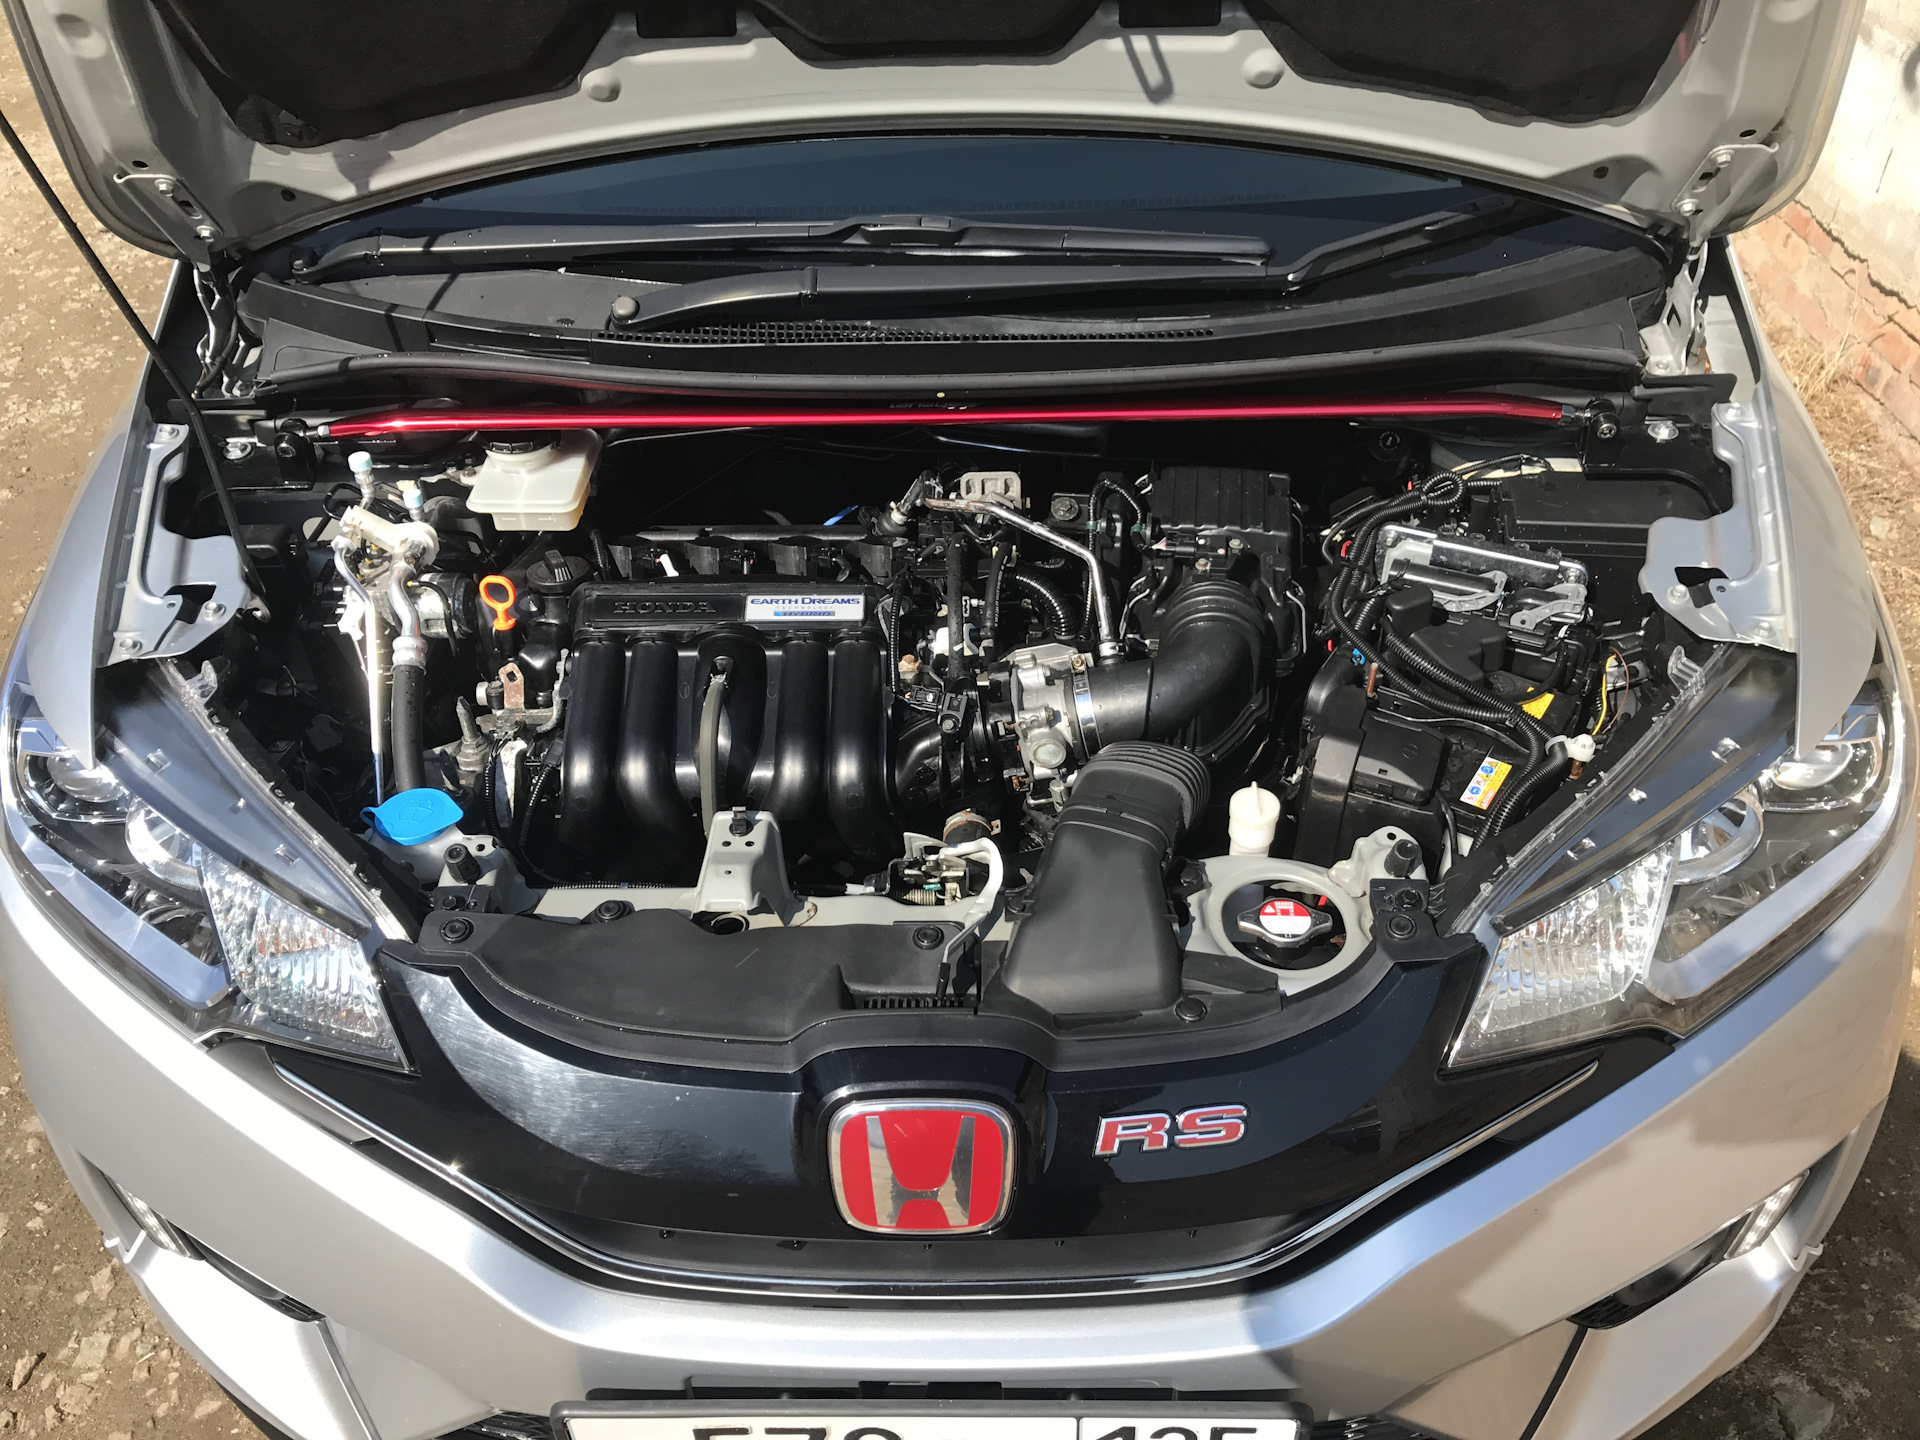 Двигатель фит 1.5. Honda Fit Hybrid 2011 Battery. Honda Fit 2016 аккумулятор. Honda Fit 2014 под капотом. Под капотом Honda Fit 2016.